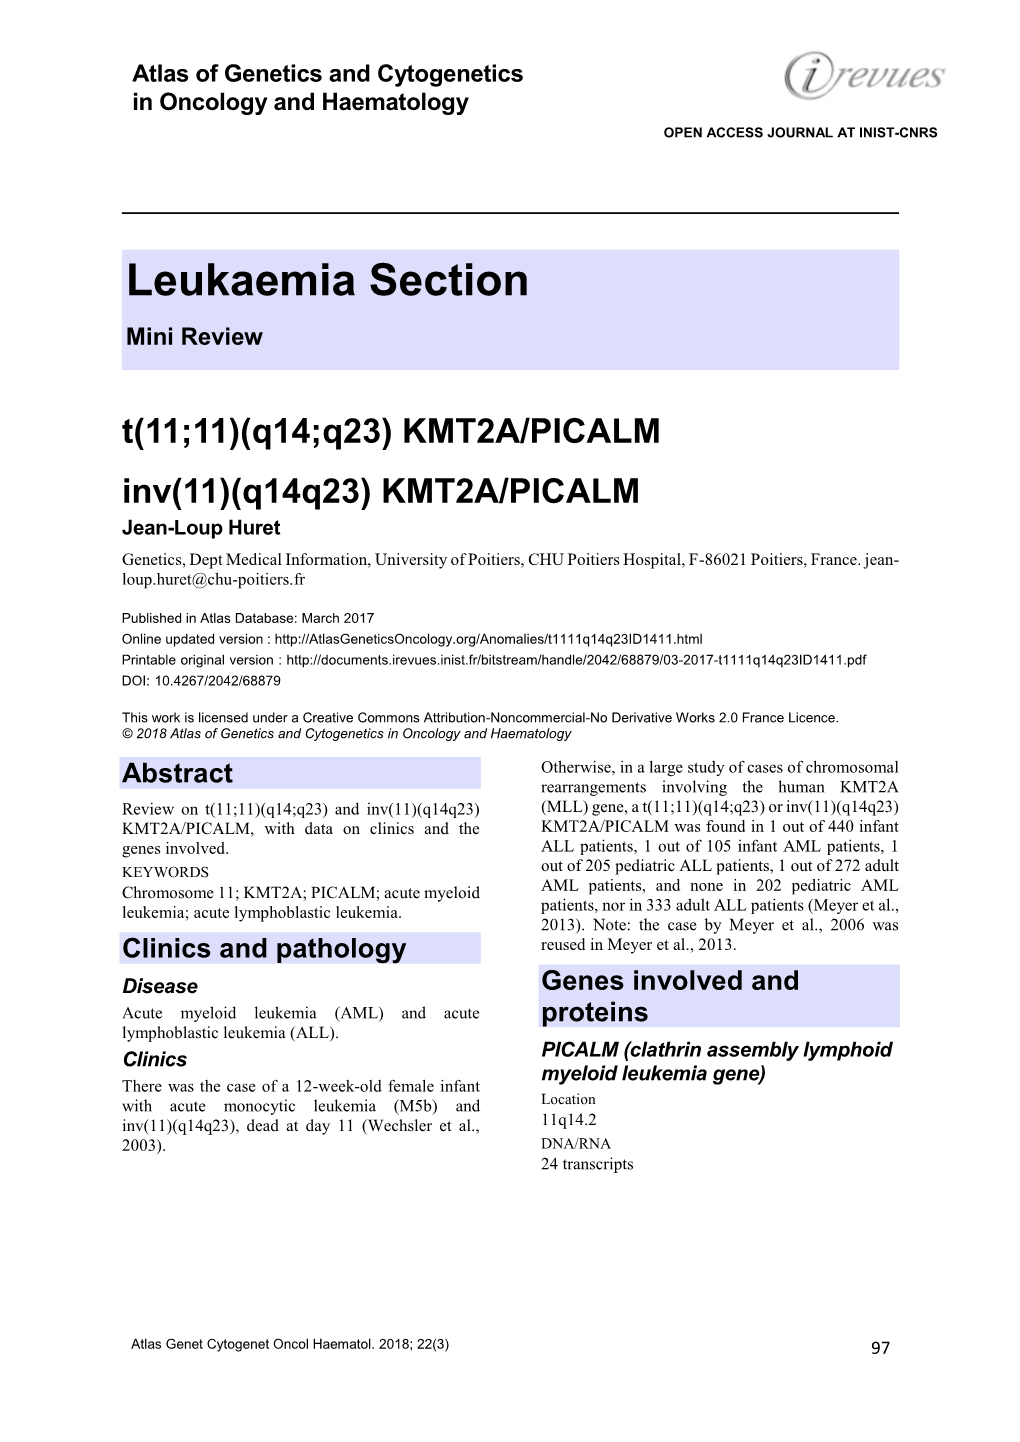 Leukaemia Section